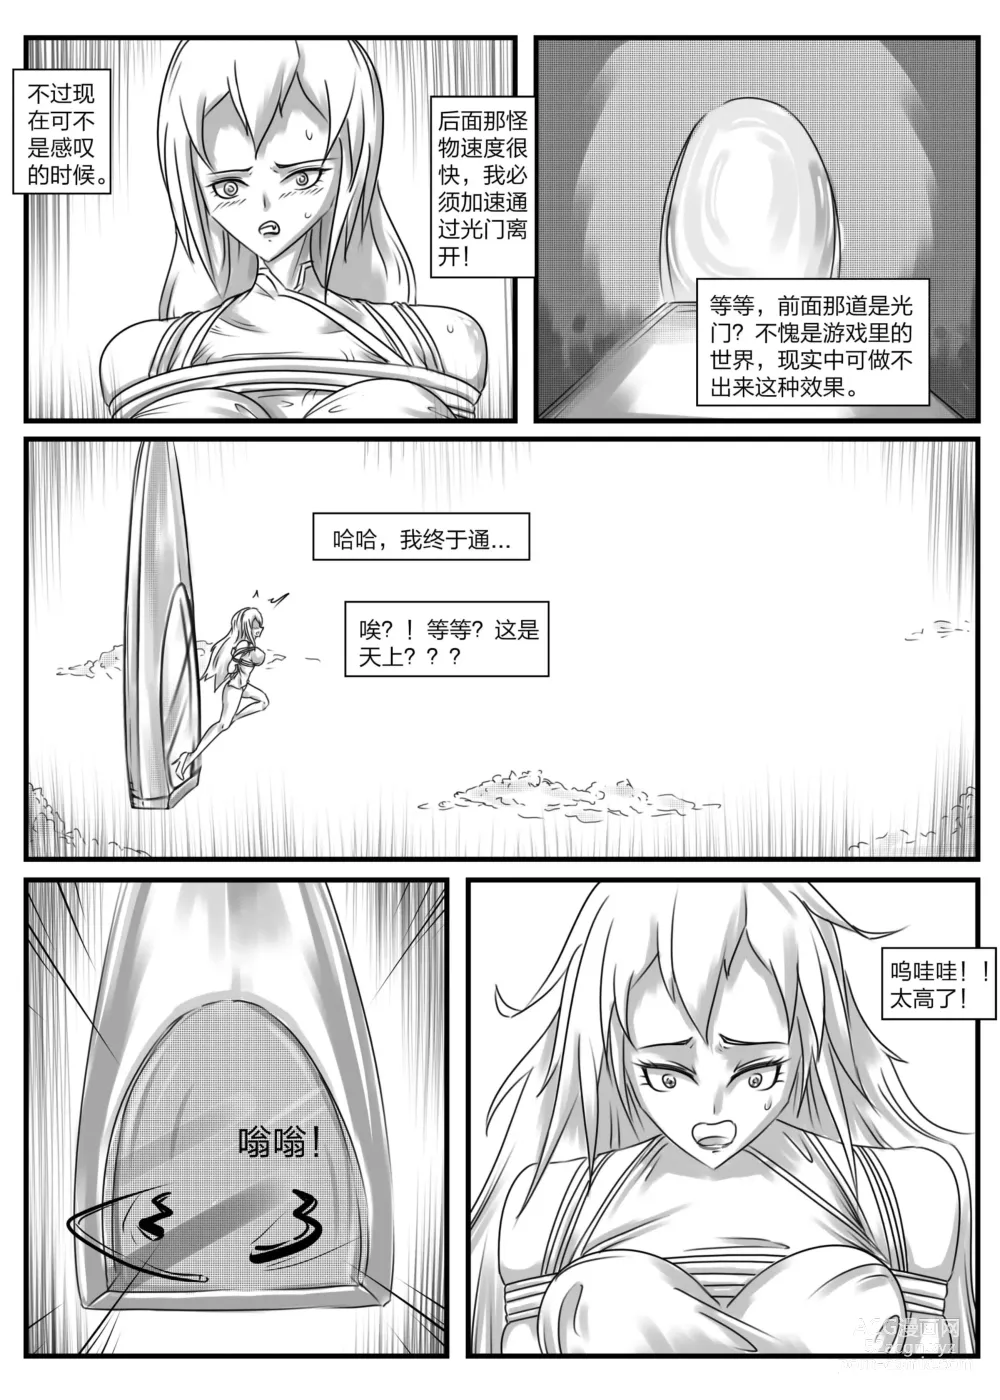 Page 5 of doujinshi 《被困游戏世界2》